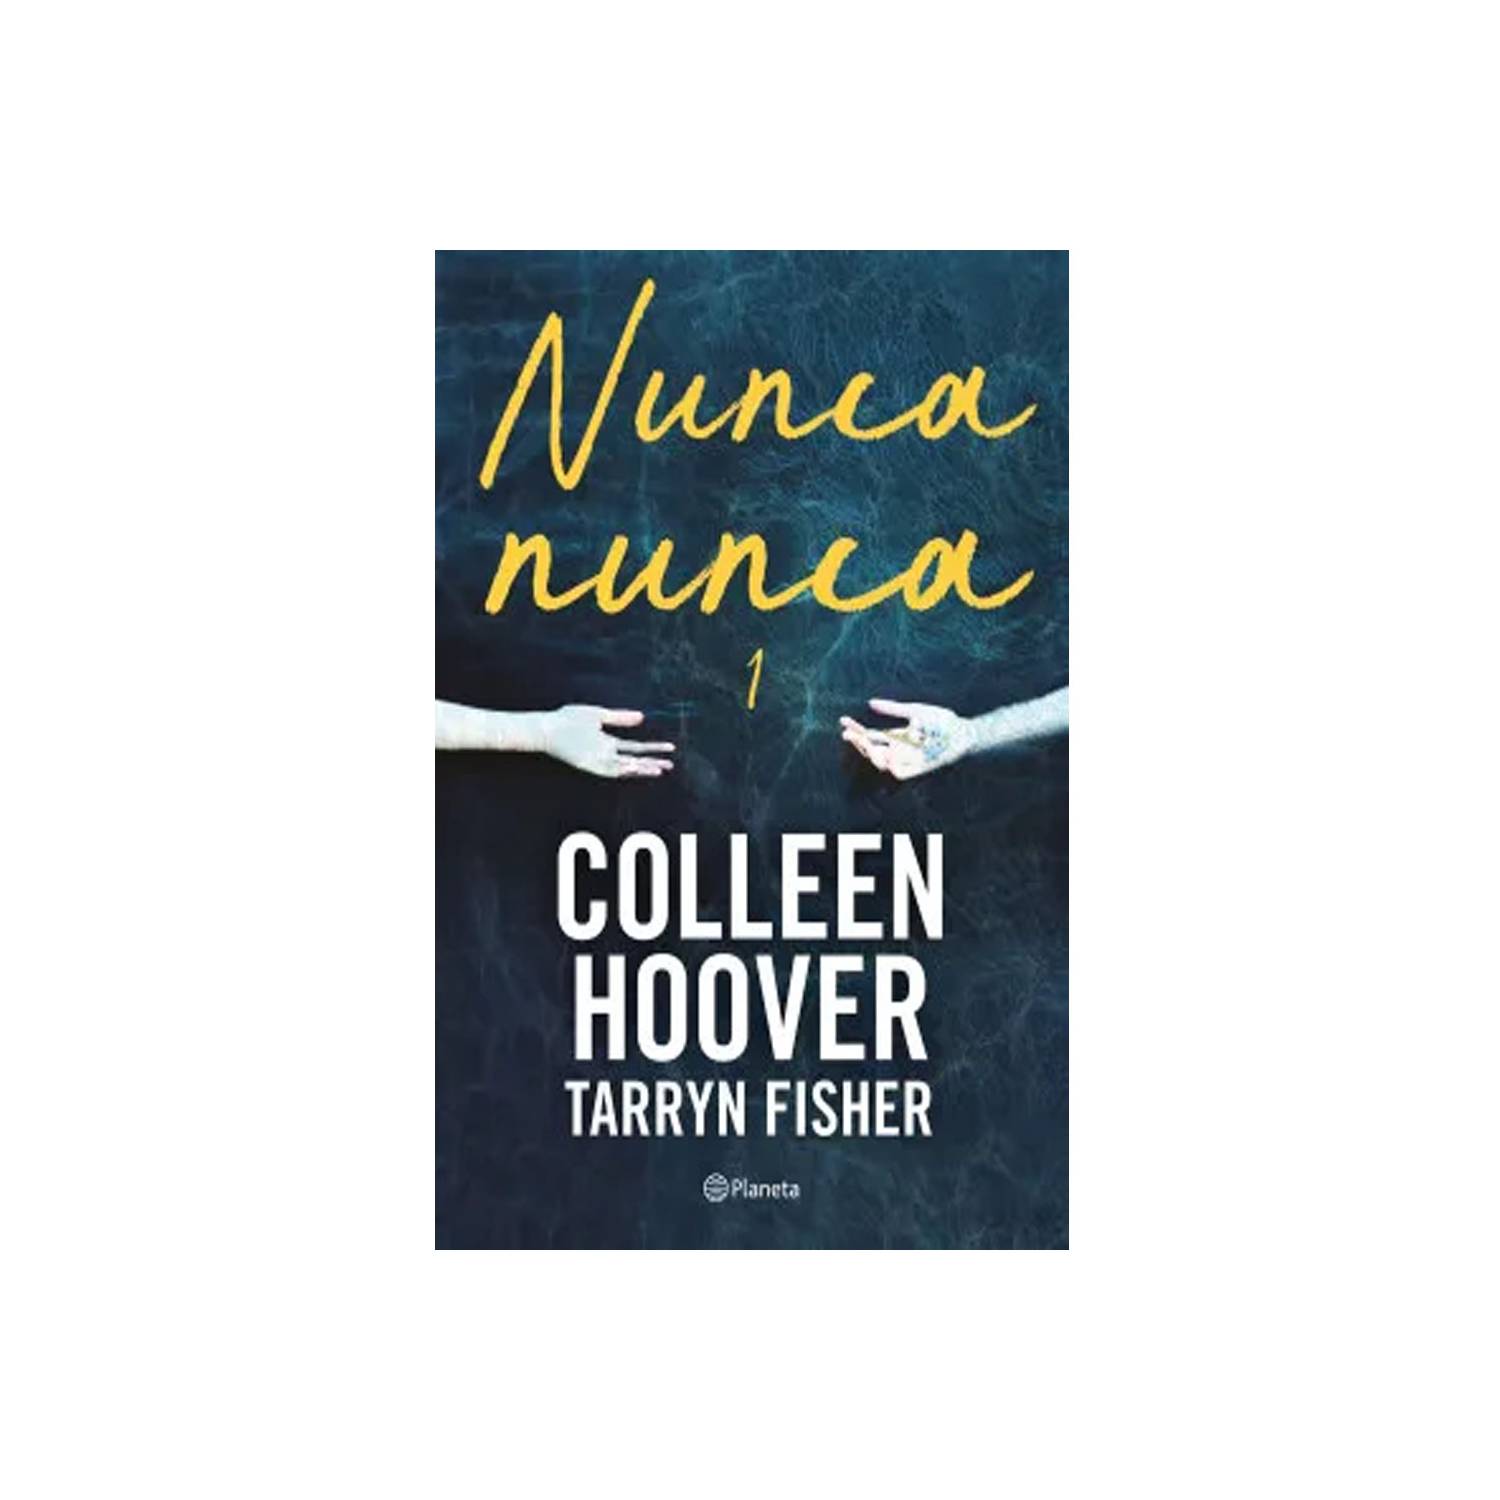 NUNCA, NUNCA 1 - COLLEEN HOOVER, TARRYN FISHER